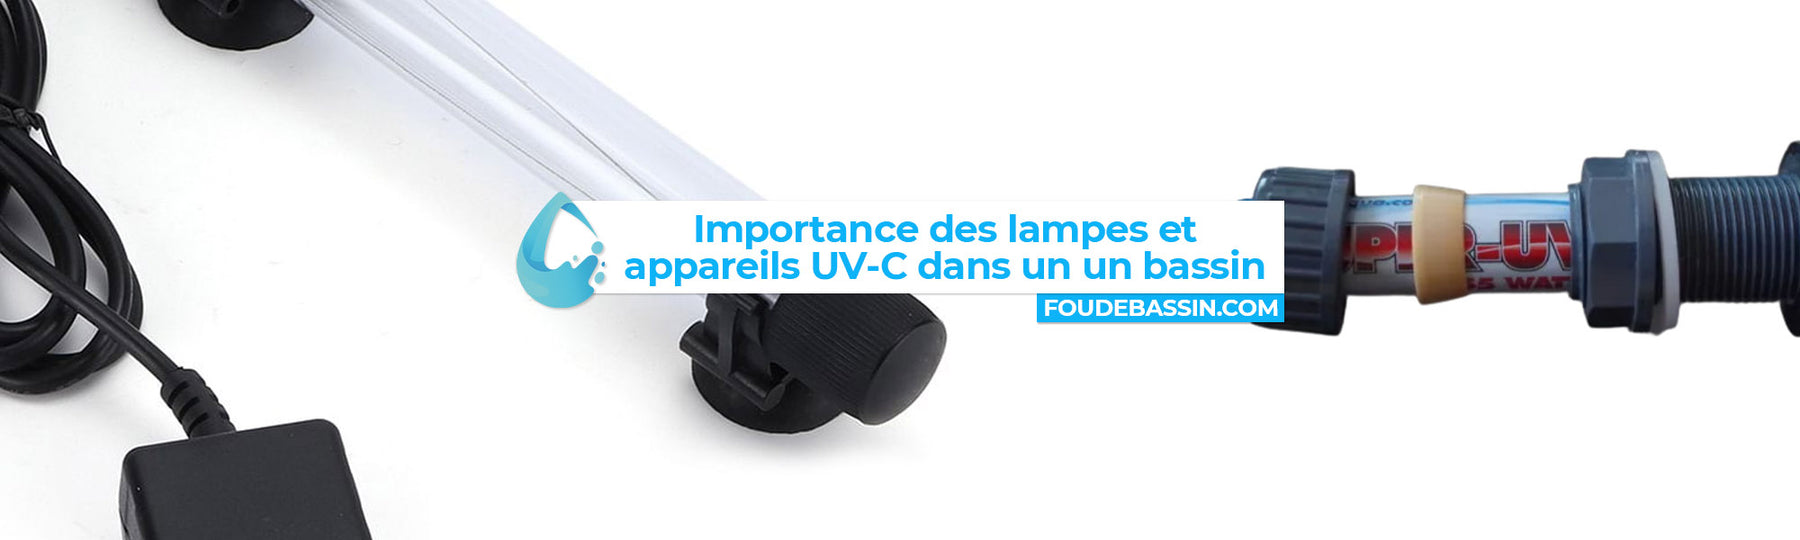 Importance des lampes et appareils UV-C dans un bassin